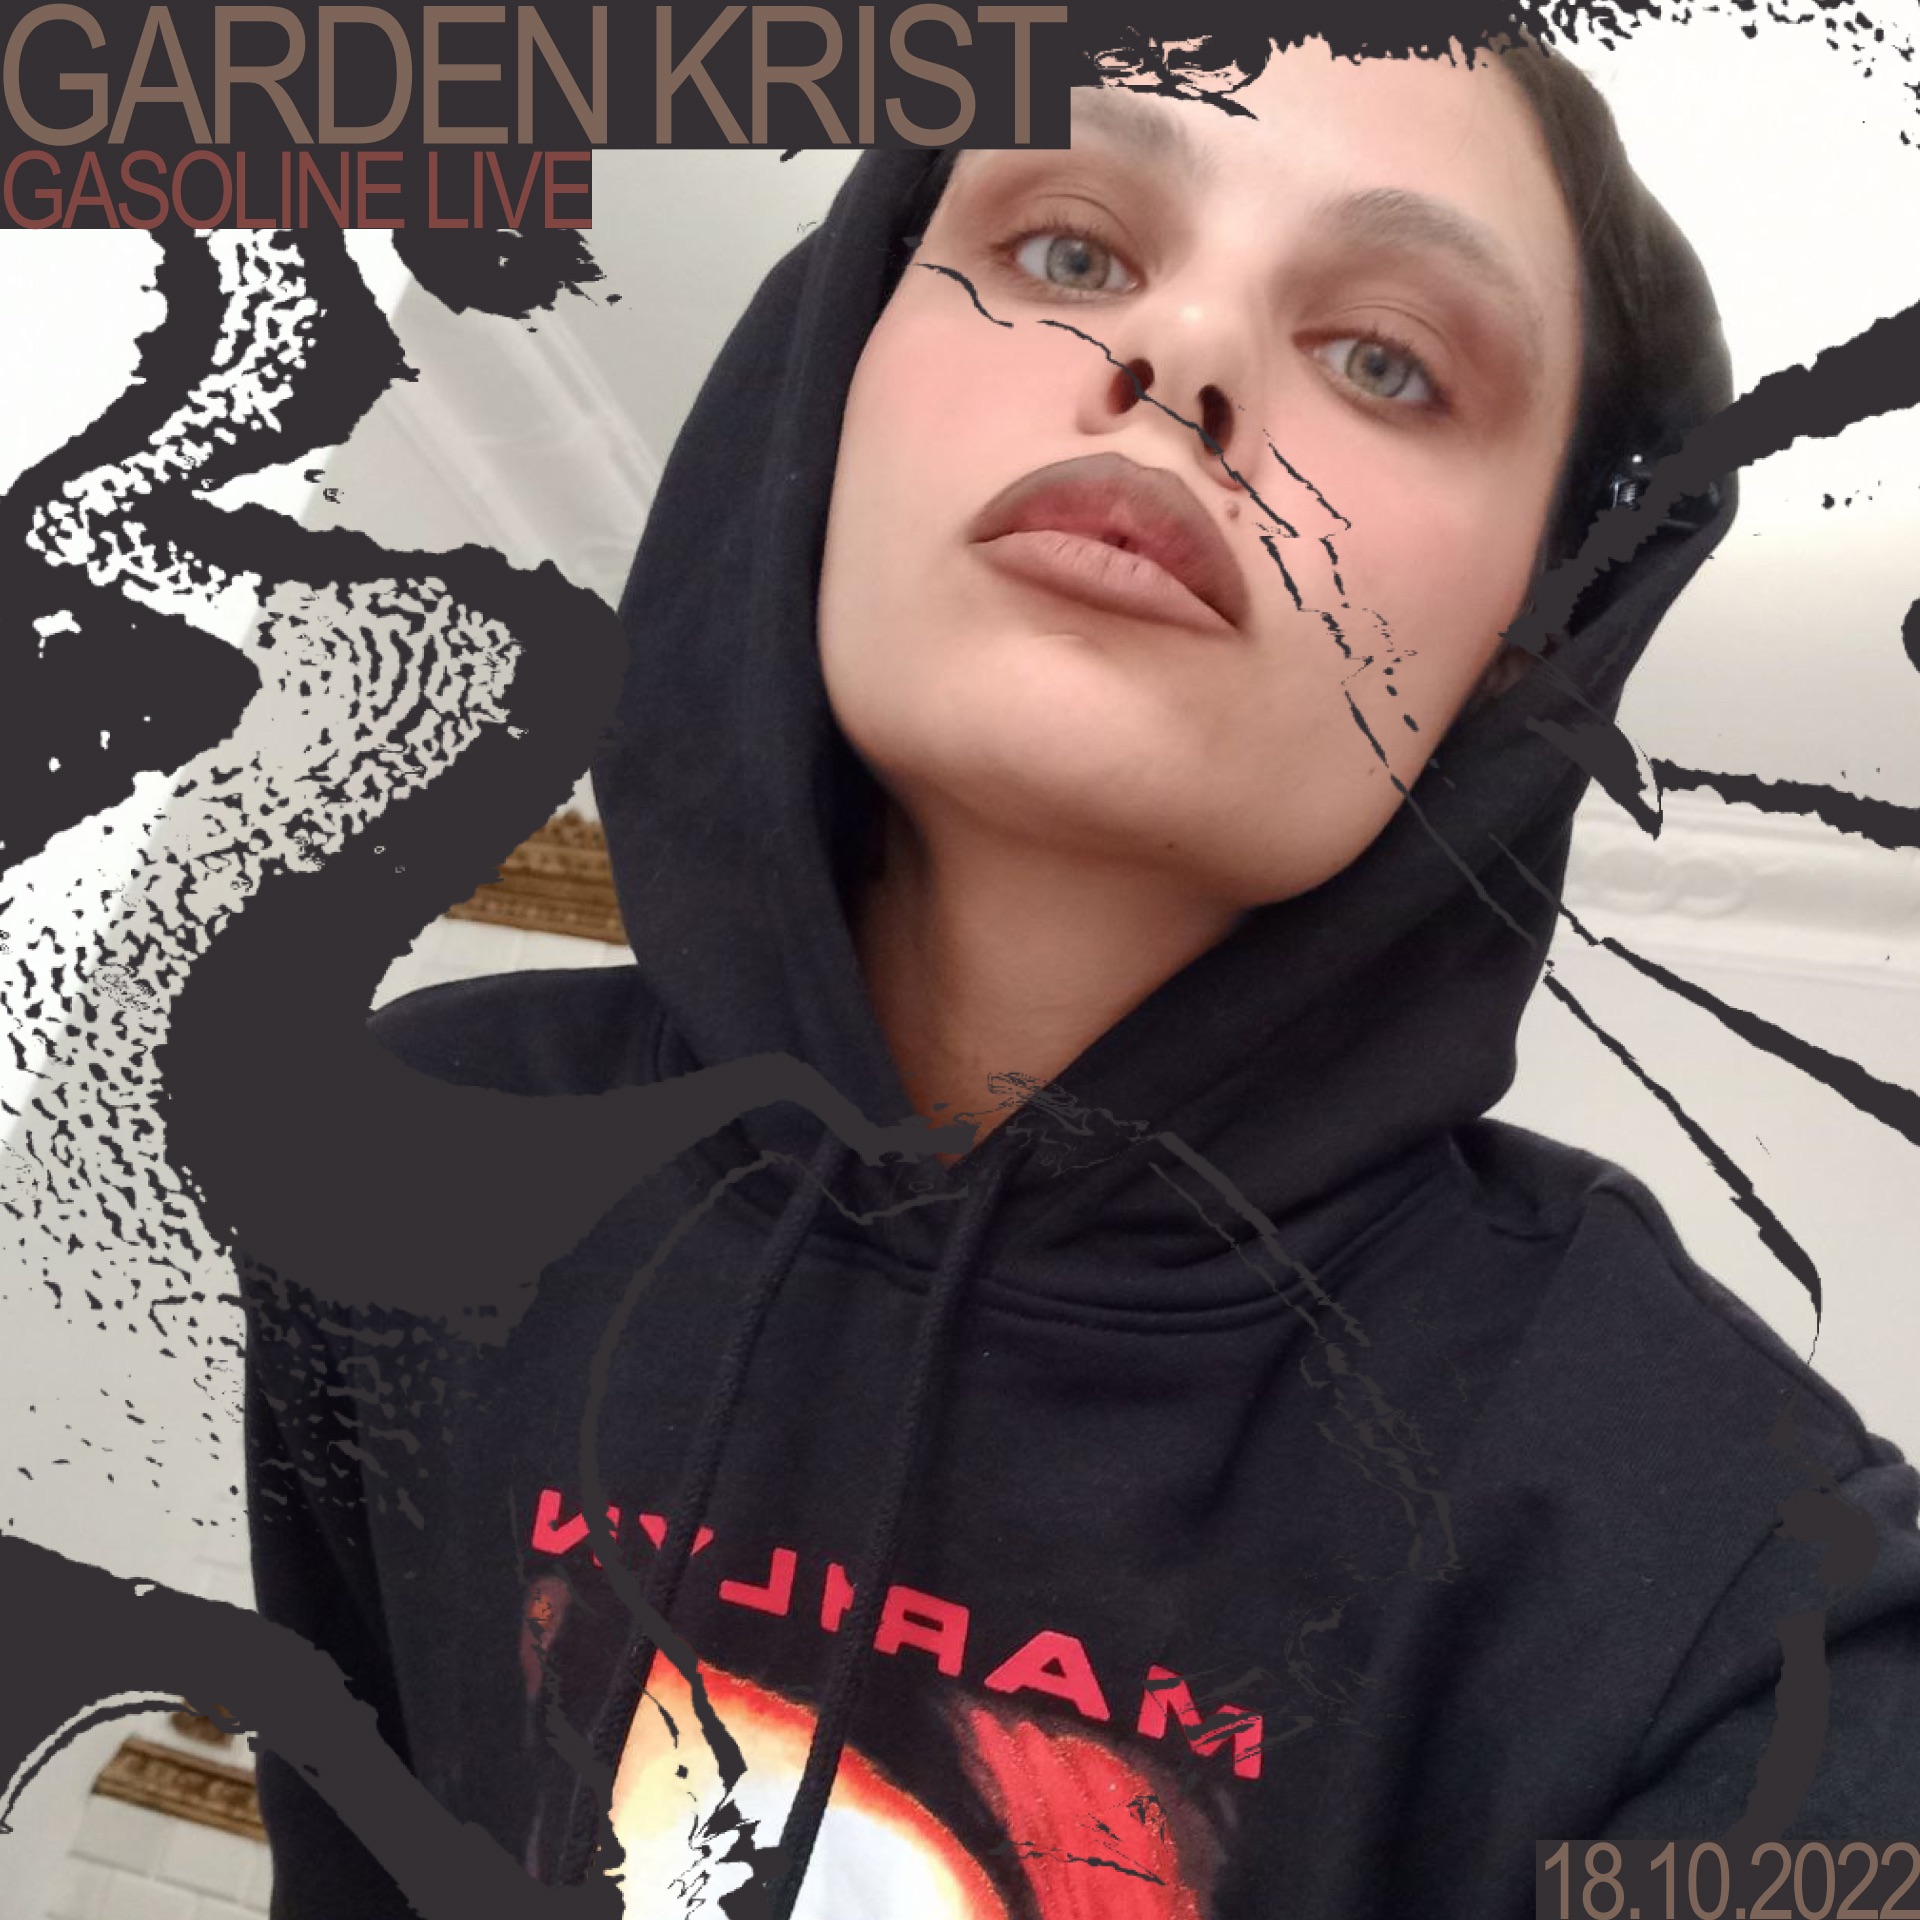 Download GASOLINE GUEST MIX: GARDEN KRIST (LIVE) 18/10/2022